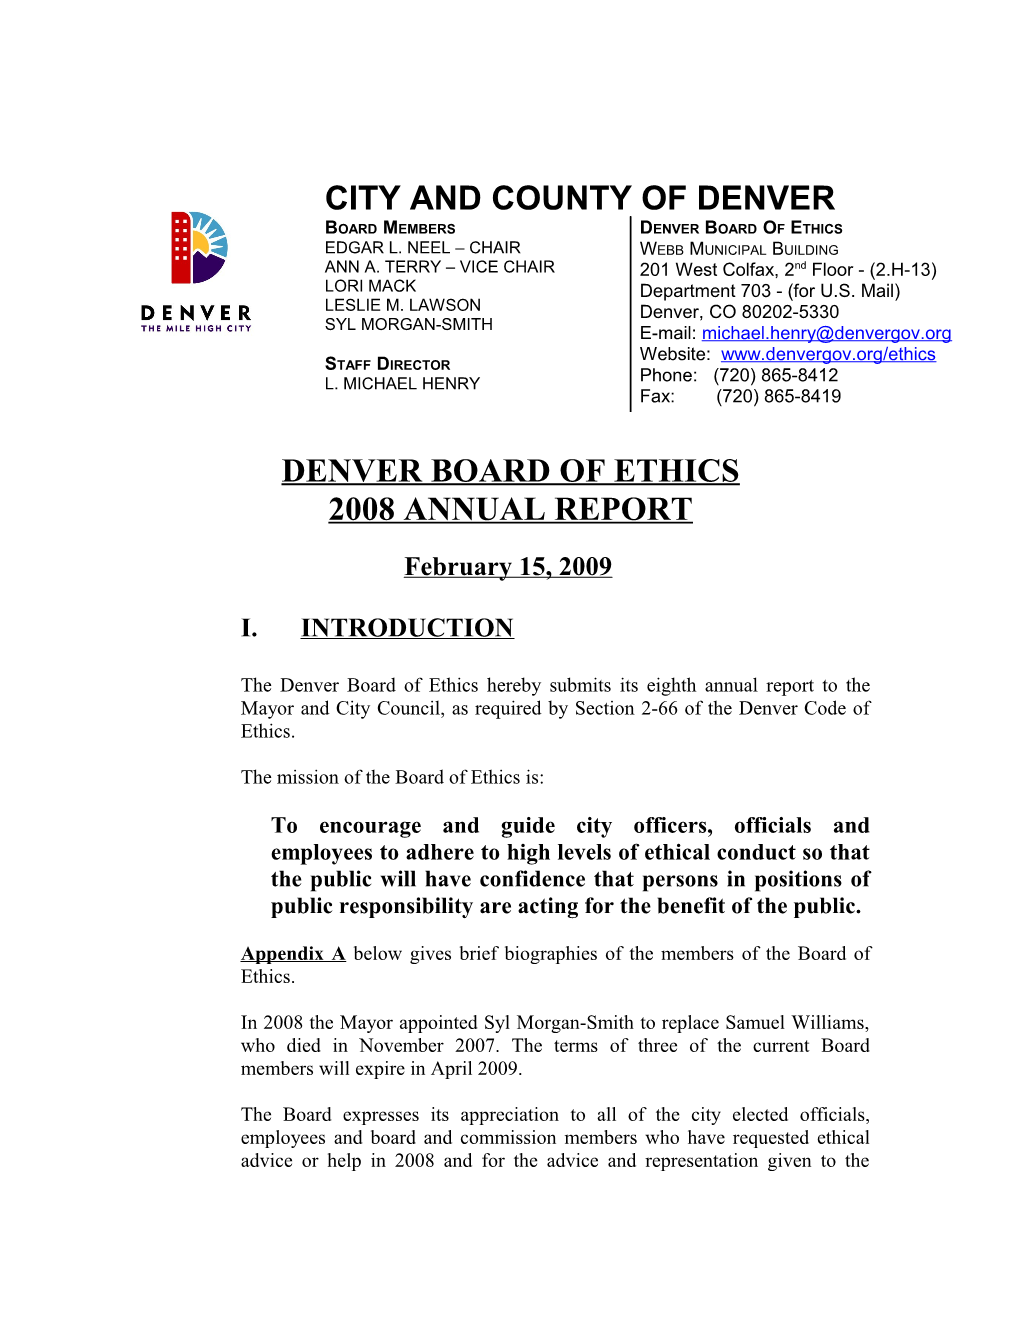 Denver Board of Ethics